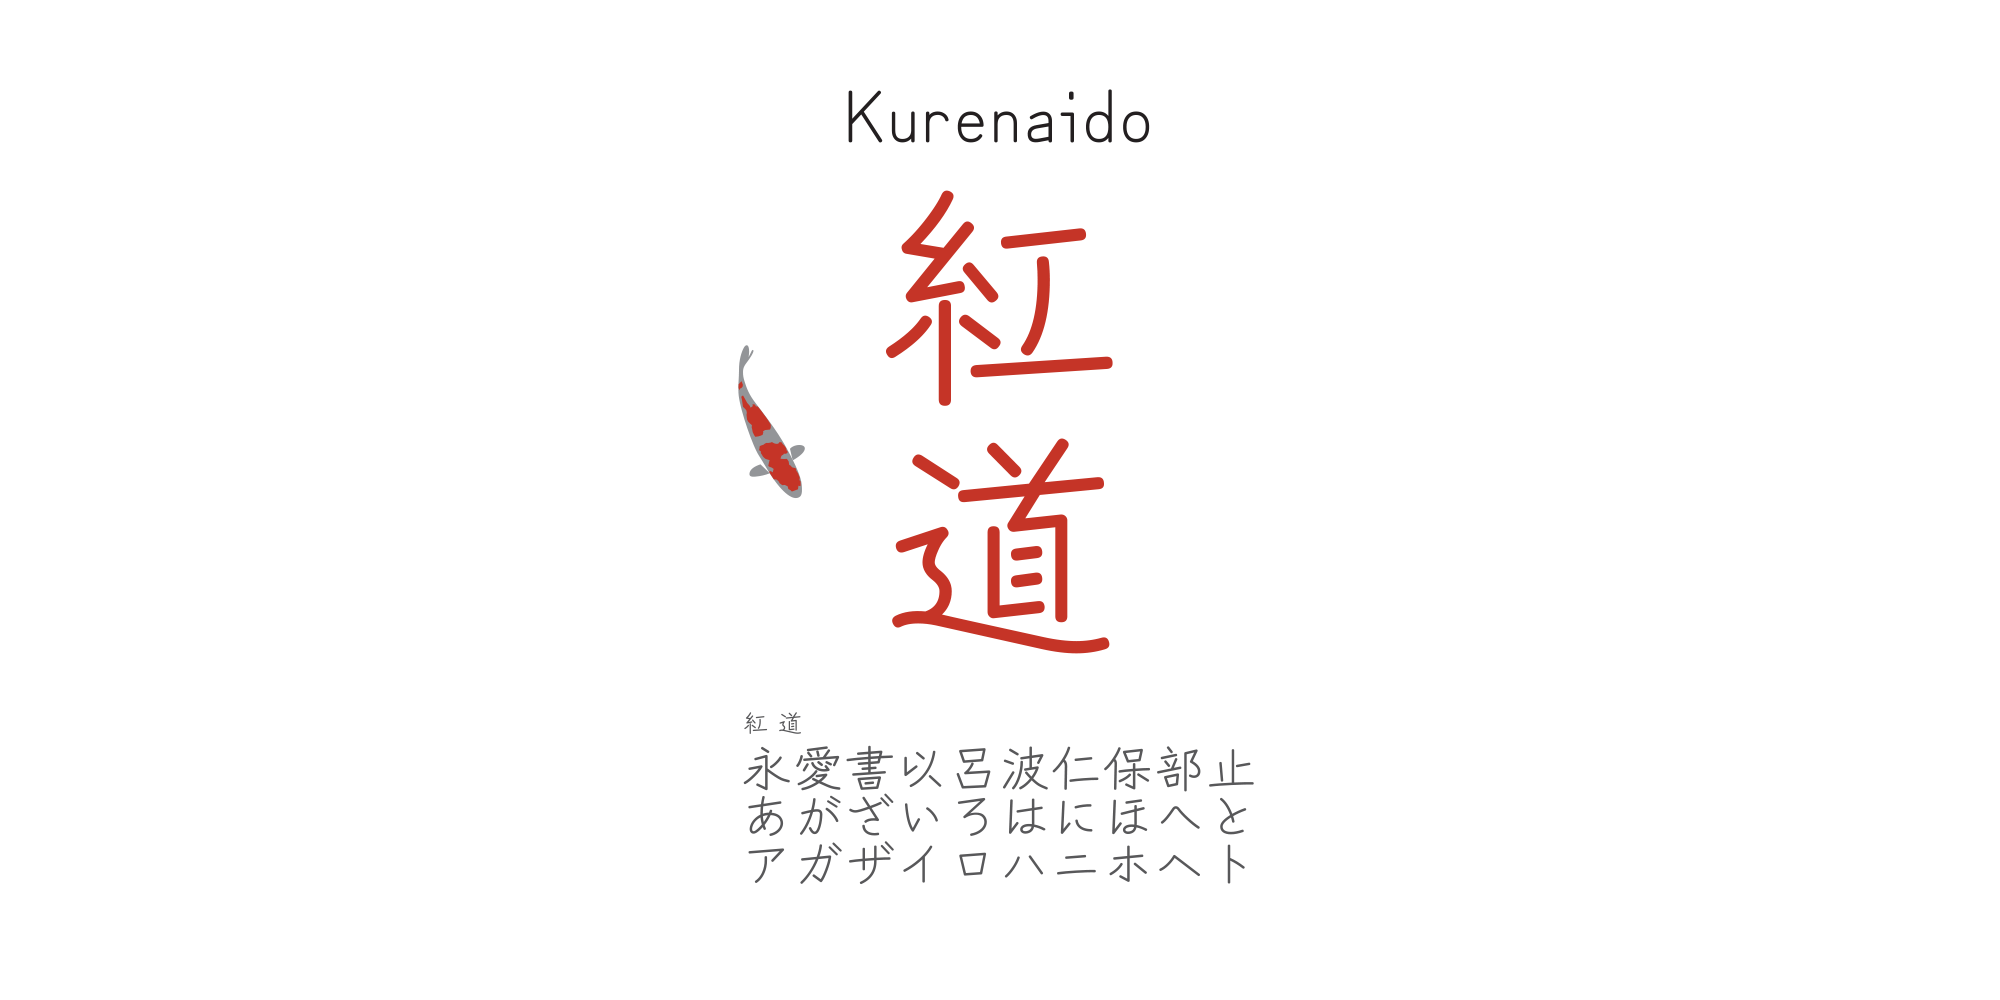 Card displaying Zen Kurenaido typeface in various styles